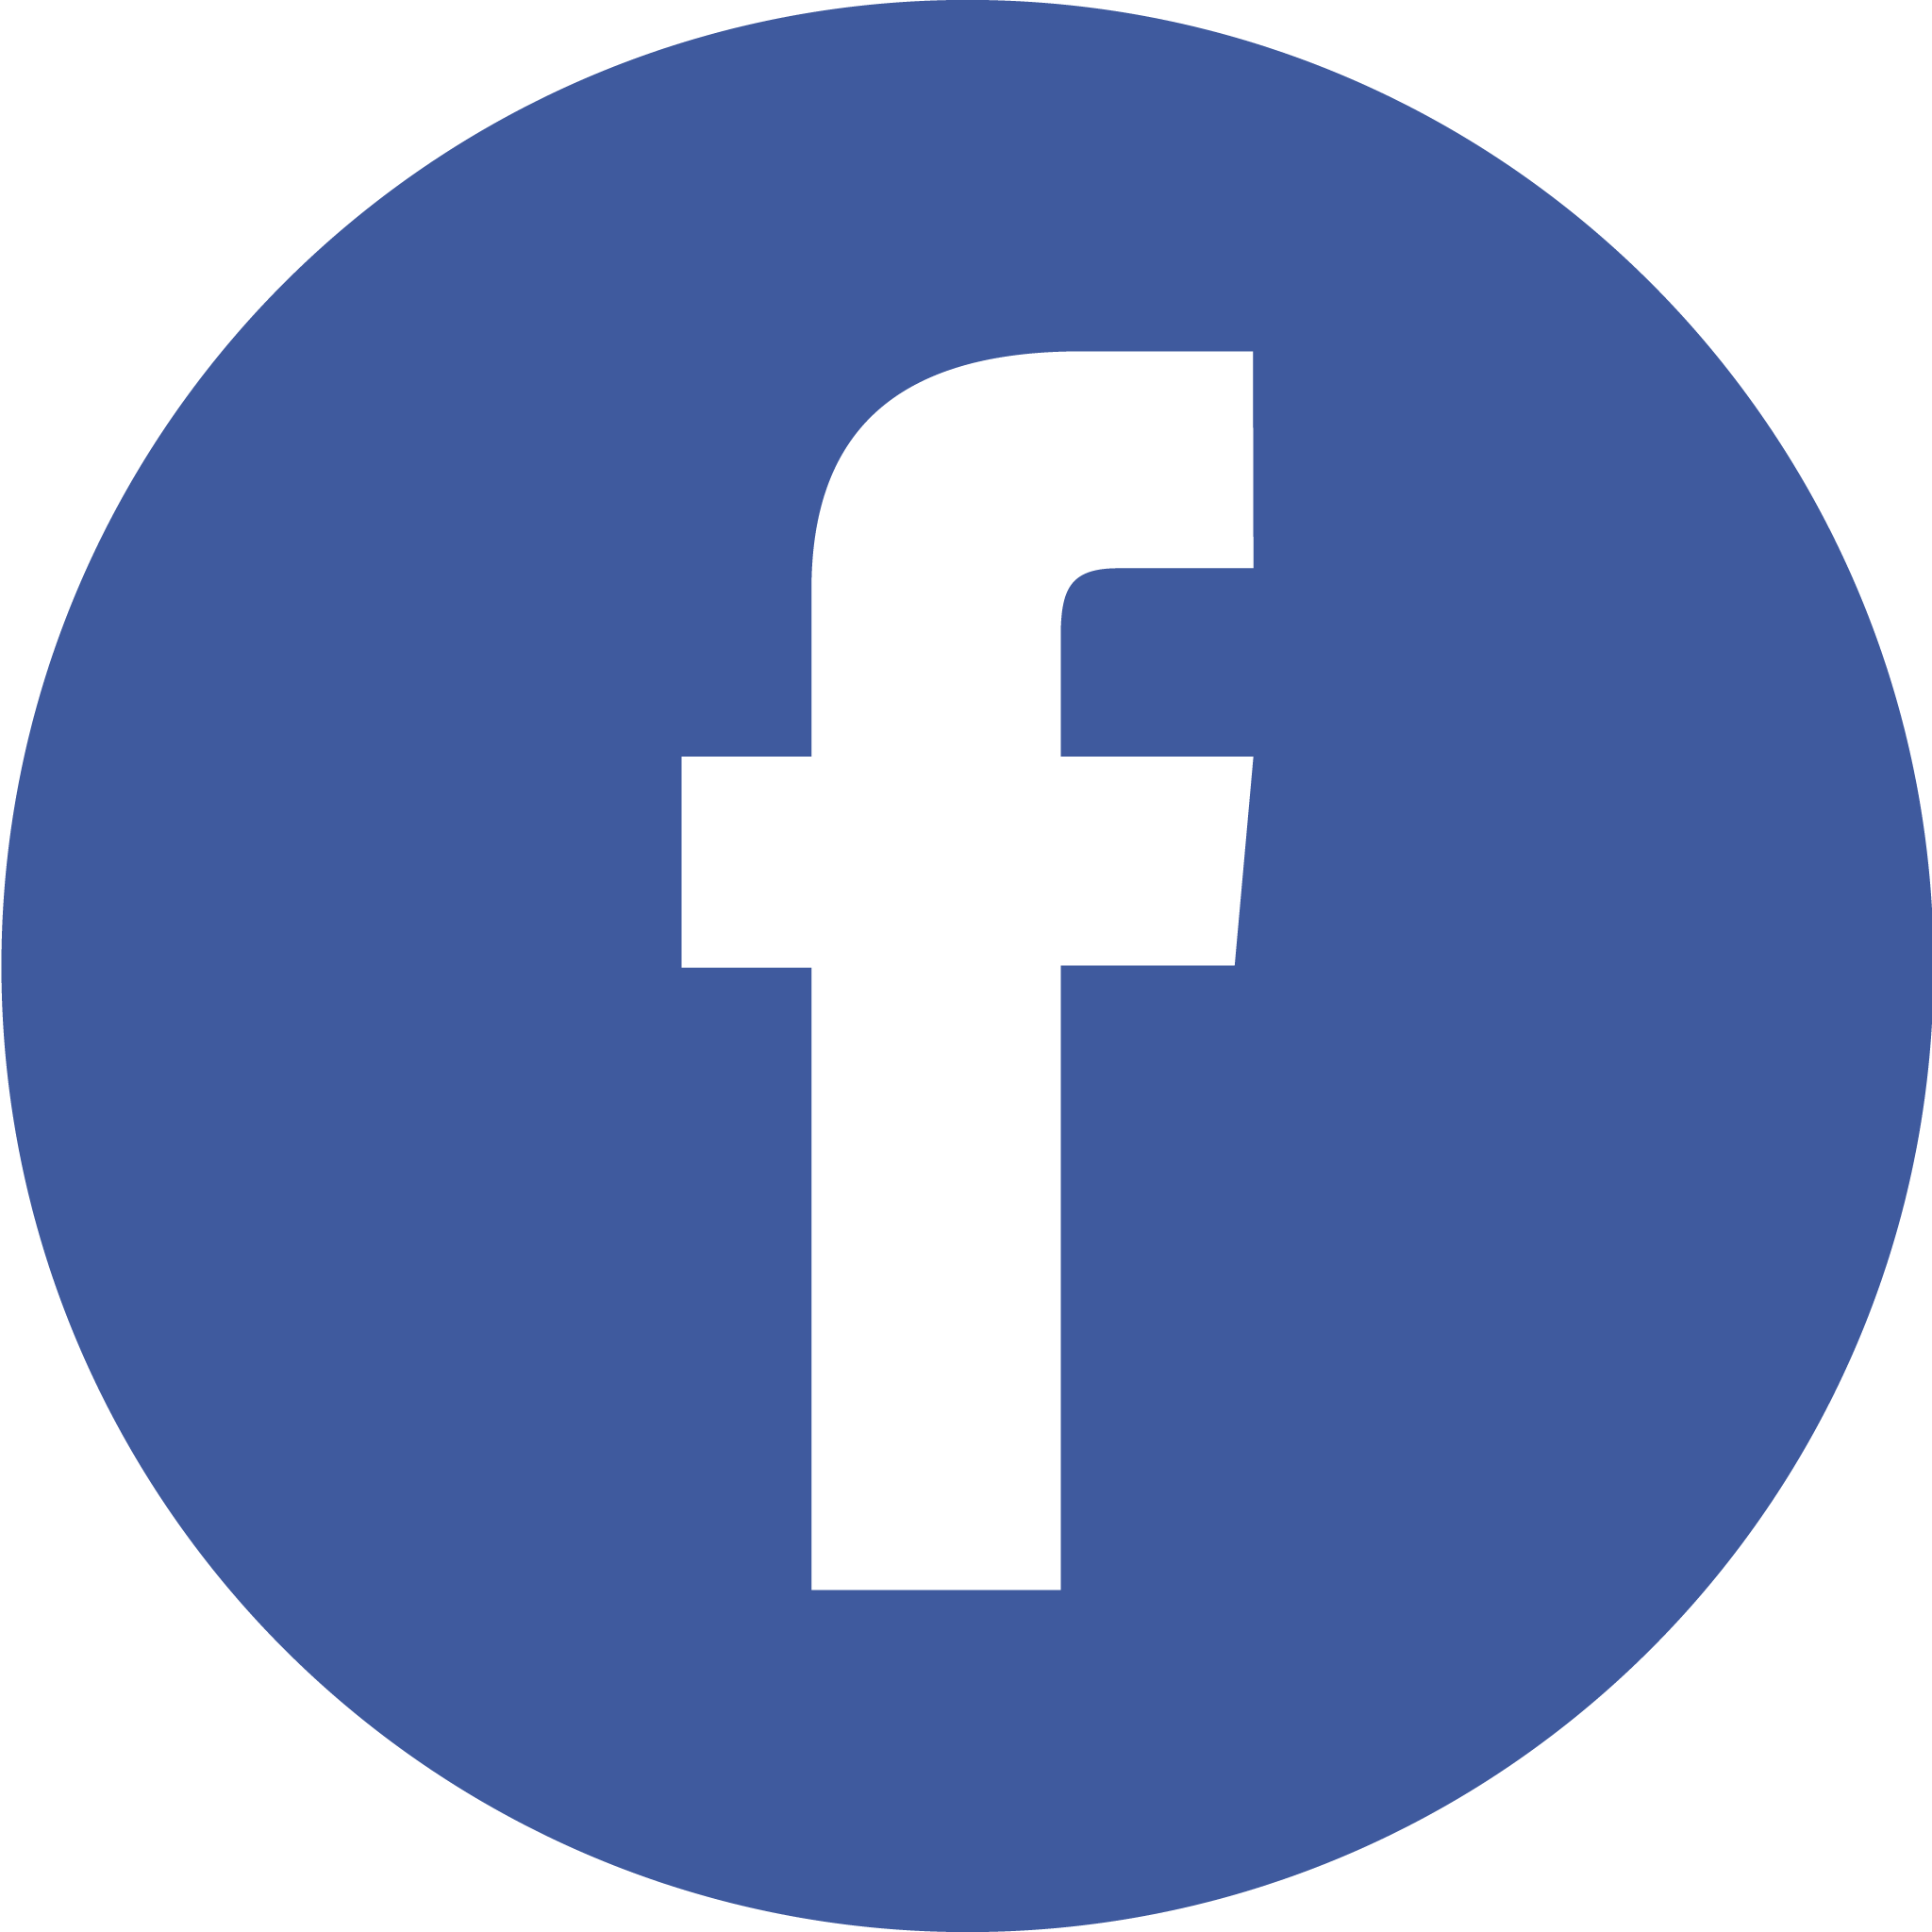 Фасебоок. Значок Фейсбук. Иконка Фейсбук без фона. Символ Фейсбук. Знак фейсбука на прозрачном фоне.